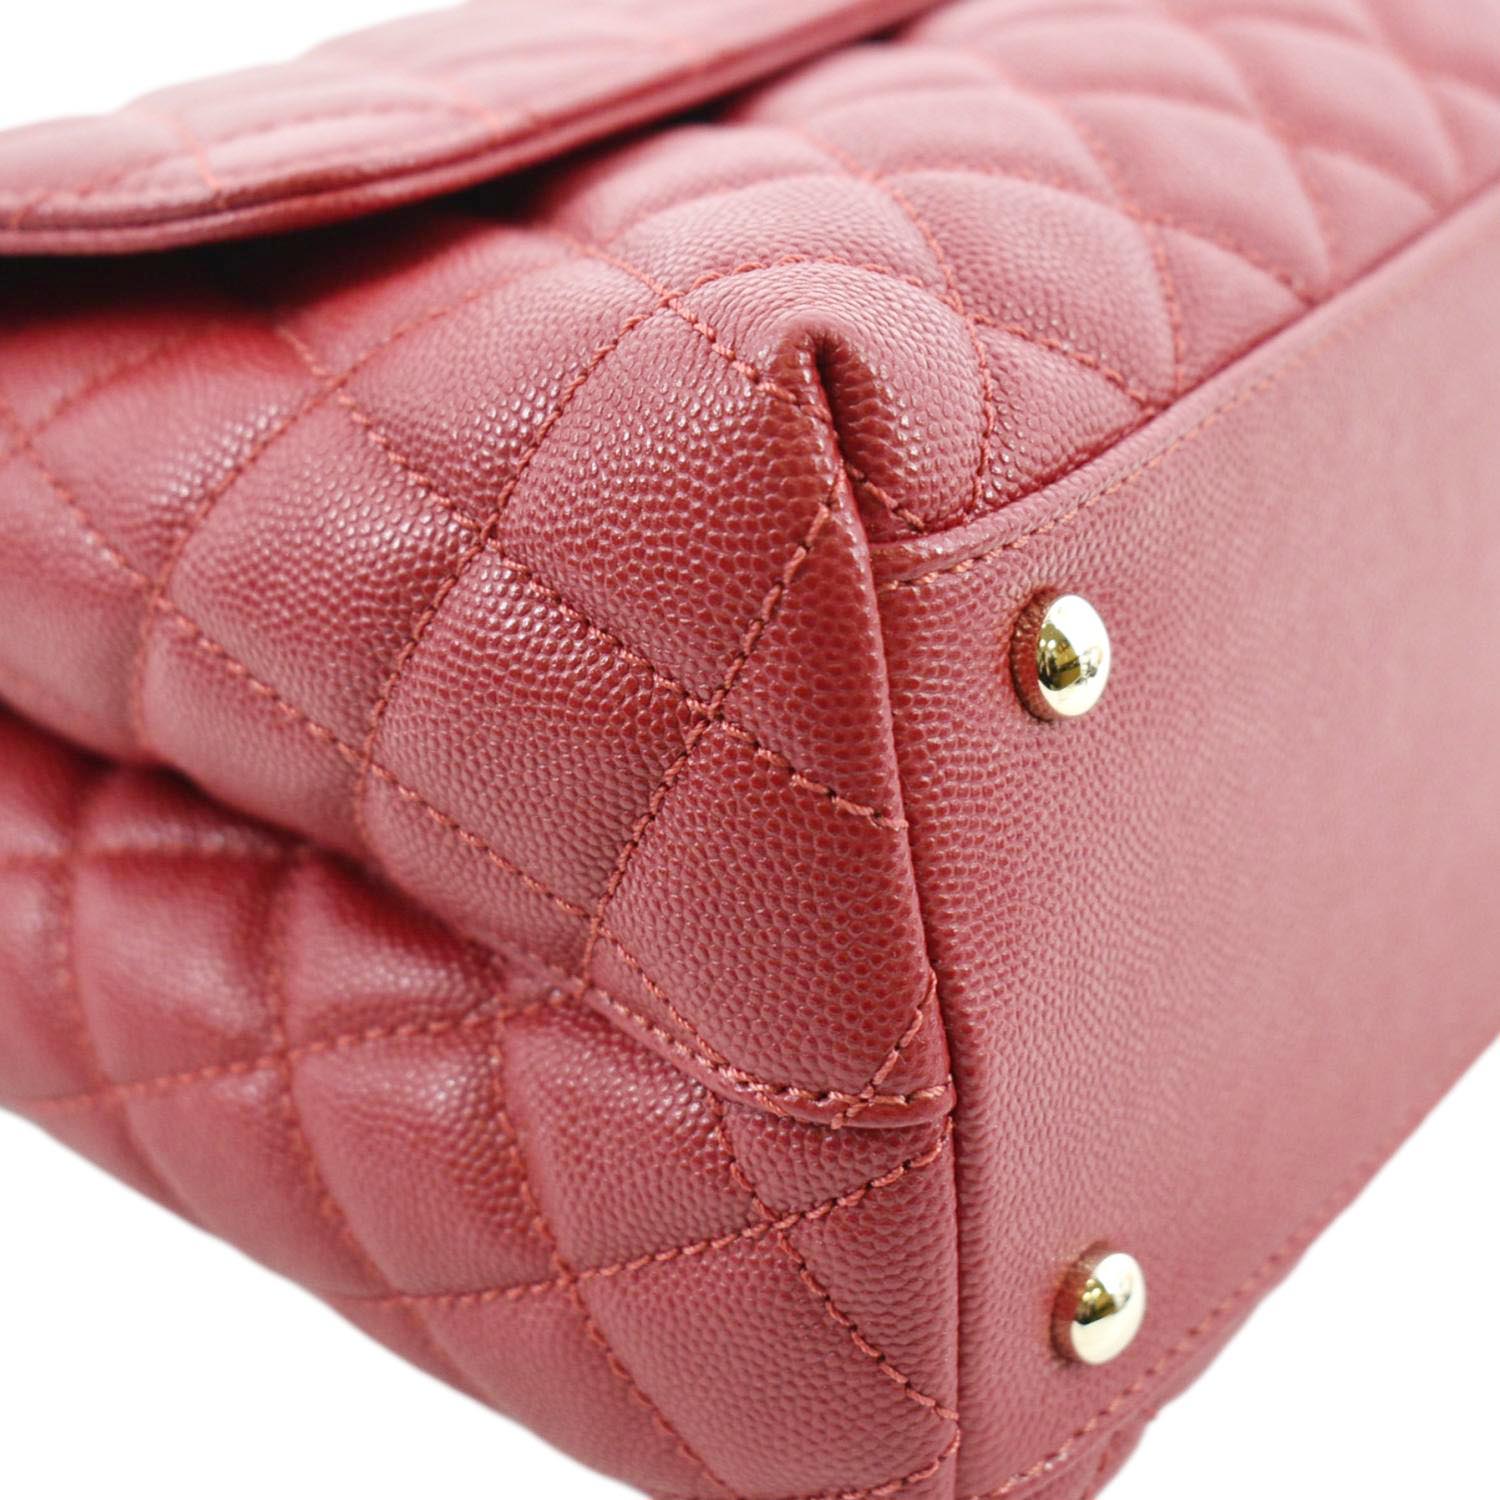 Chanel Medium Coco Top Handle Shoulder Bag